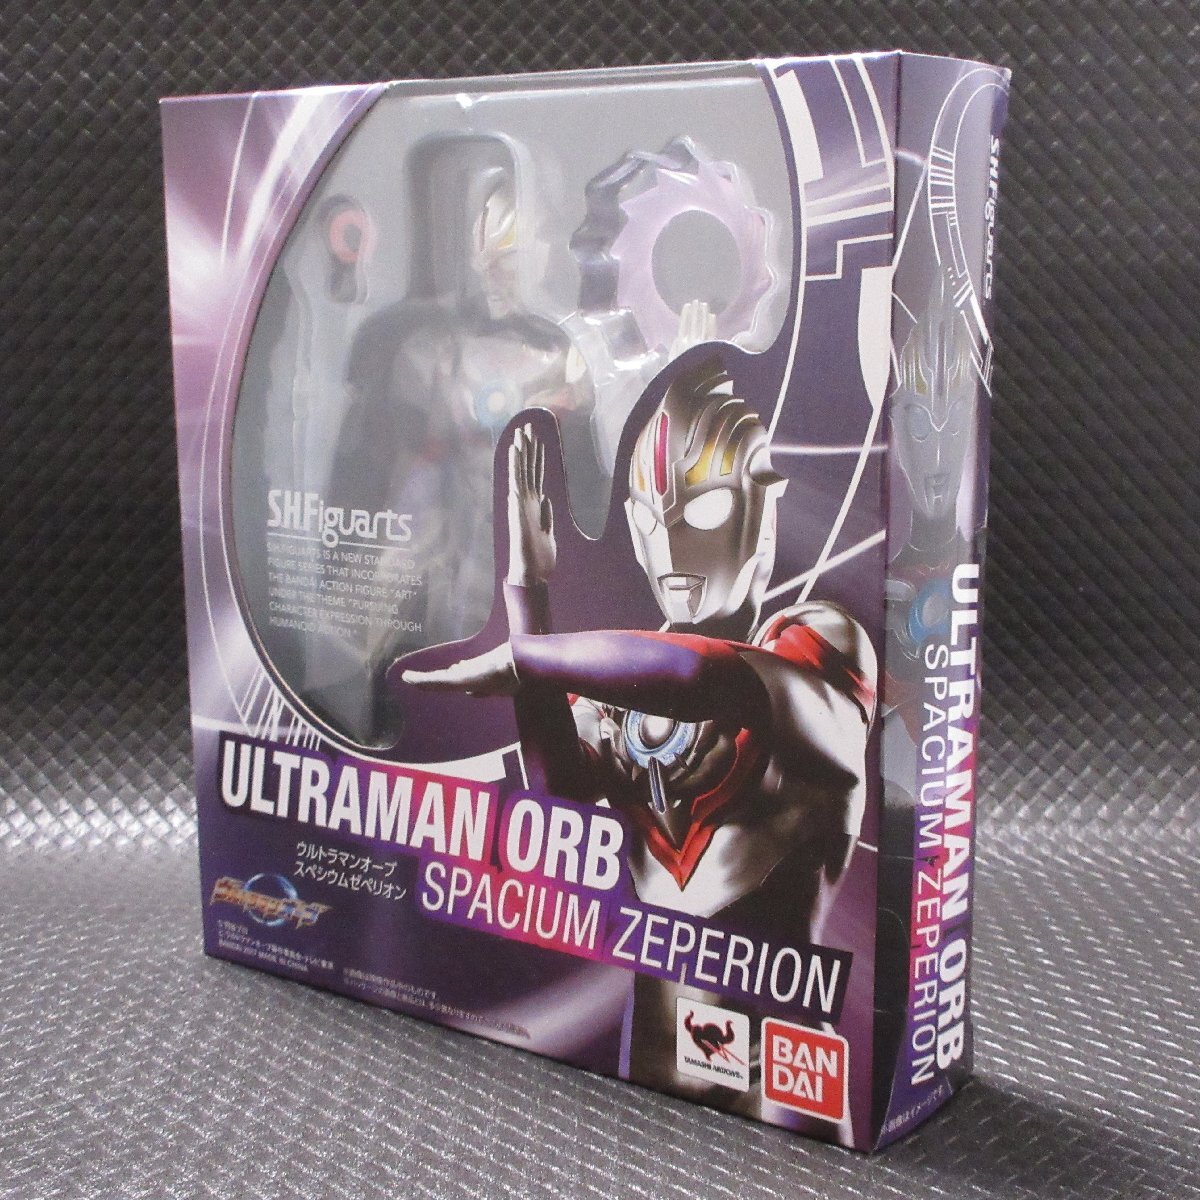 *BANDAI S.H.Figuarts Ultraman o-b spec siumzepeli on * не собран товар 